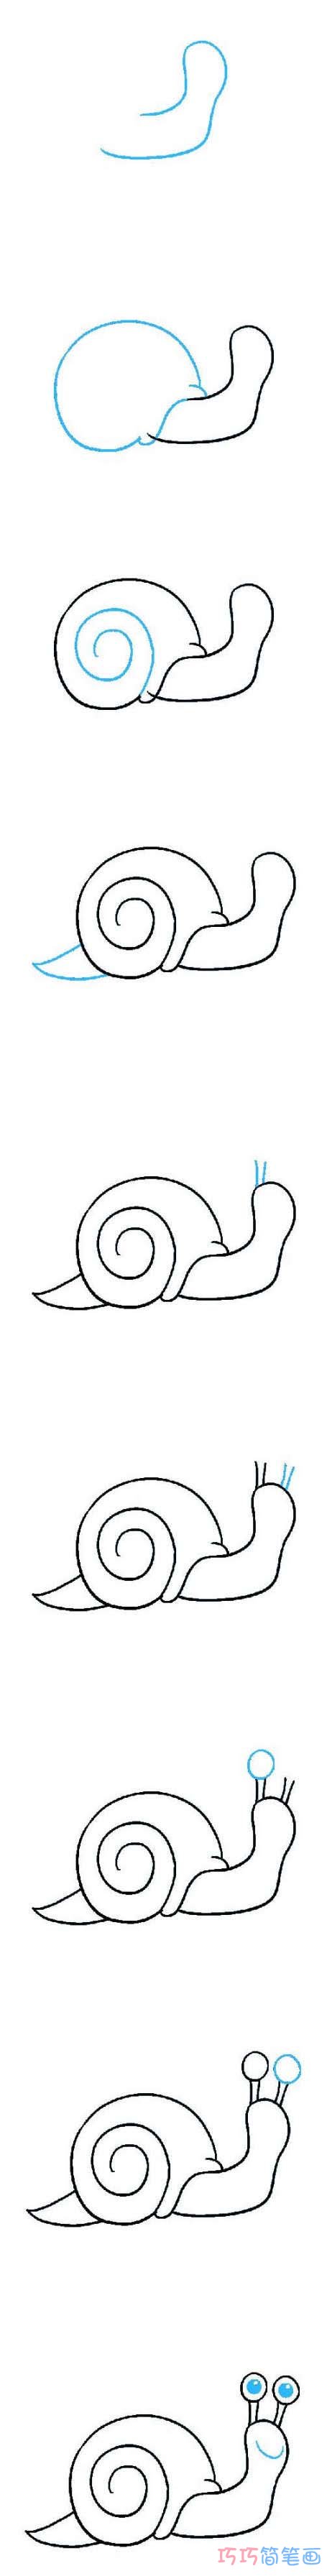 简笔画小蜗牛怎么画带步骤图简单好看